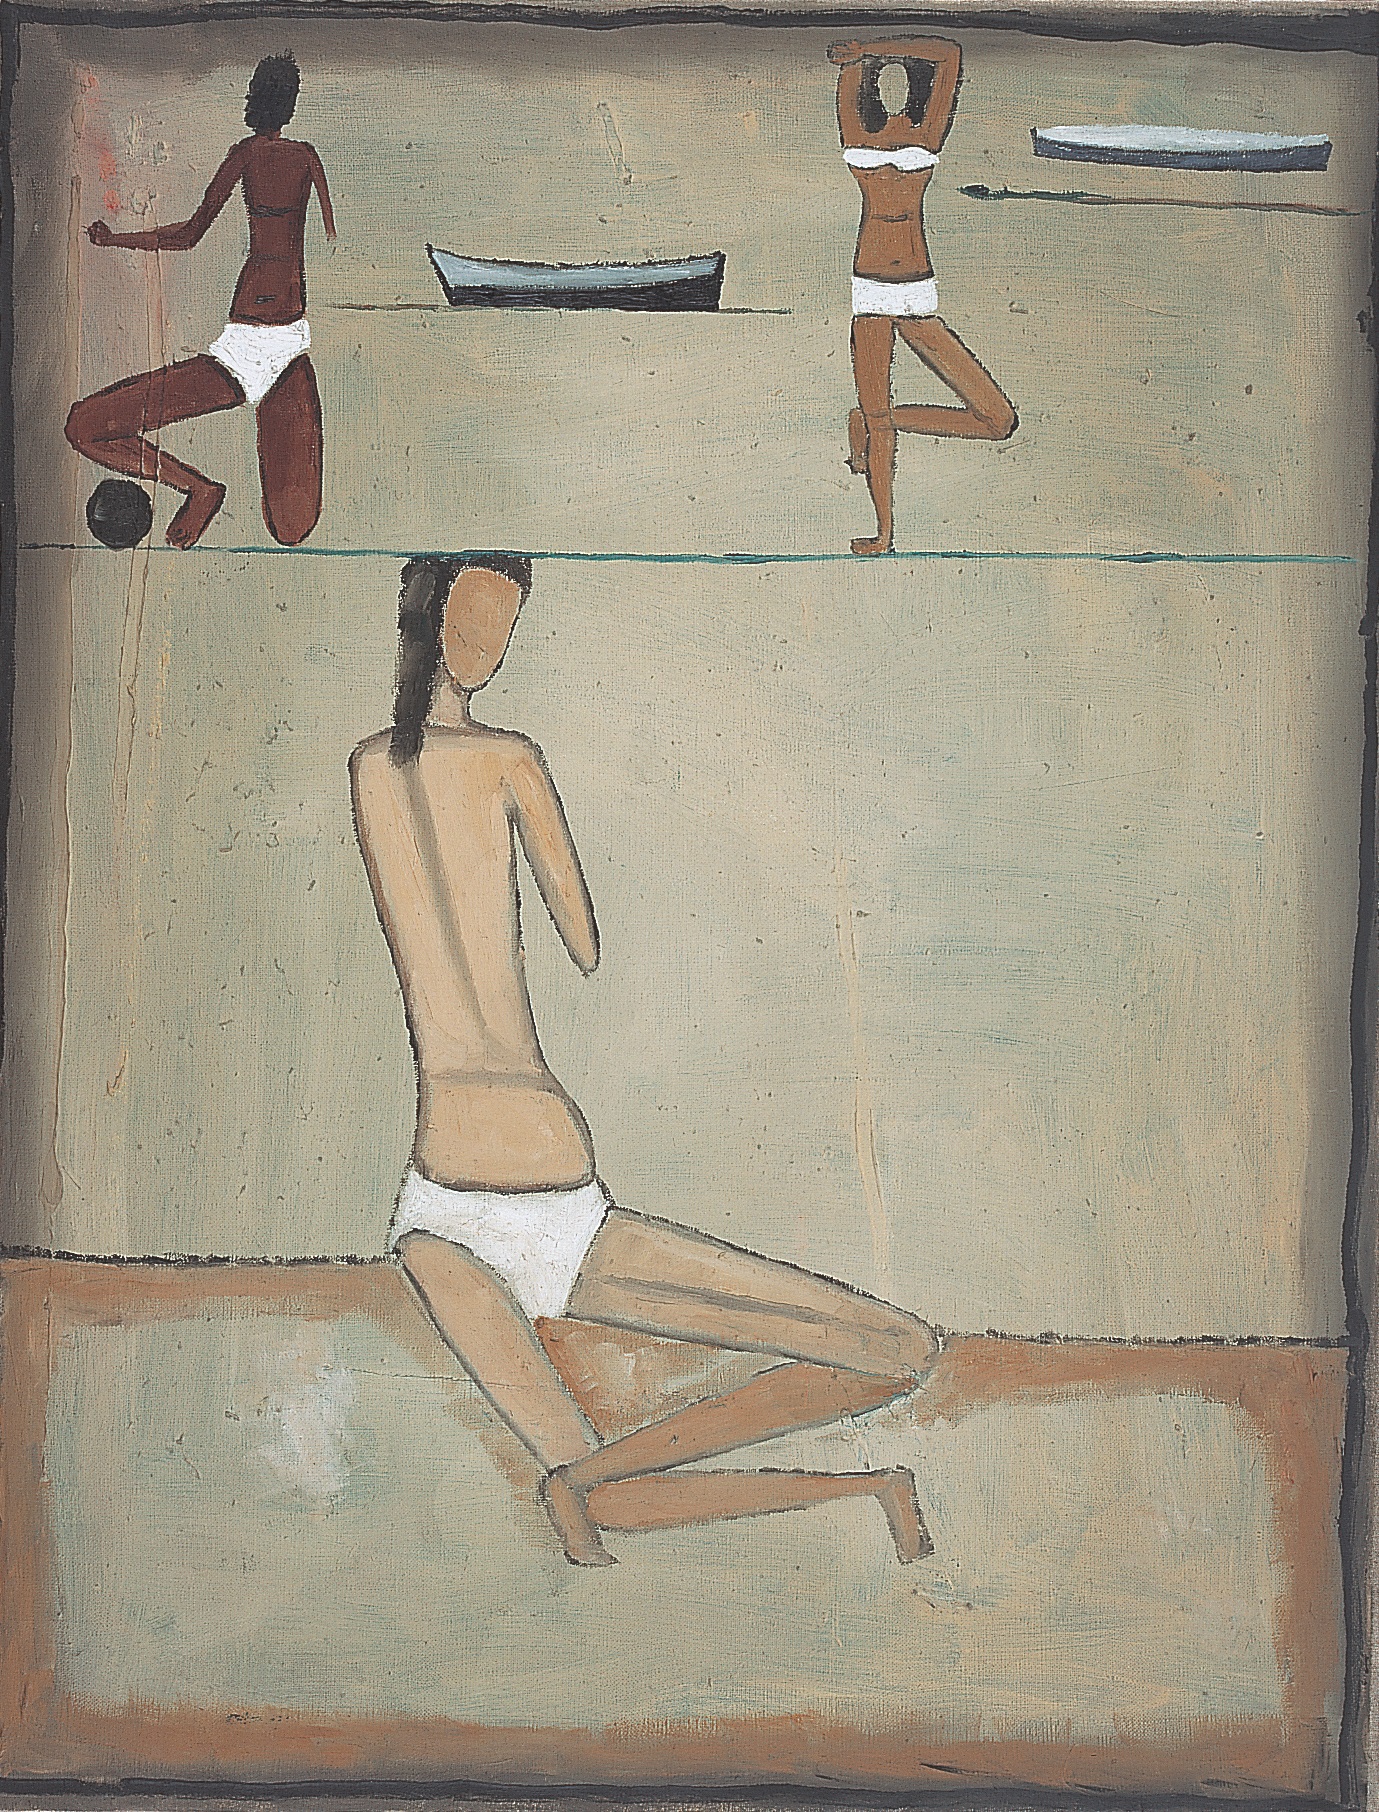 Jerzy Nowosielski, Plaża, 1958, 65 x 50 cm, olej/płótno, Fundacja Nowosielskich